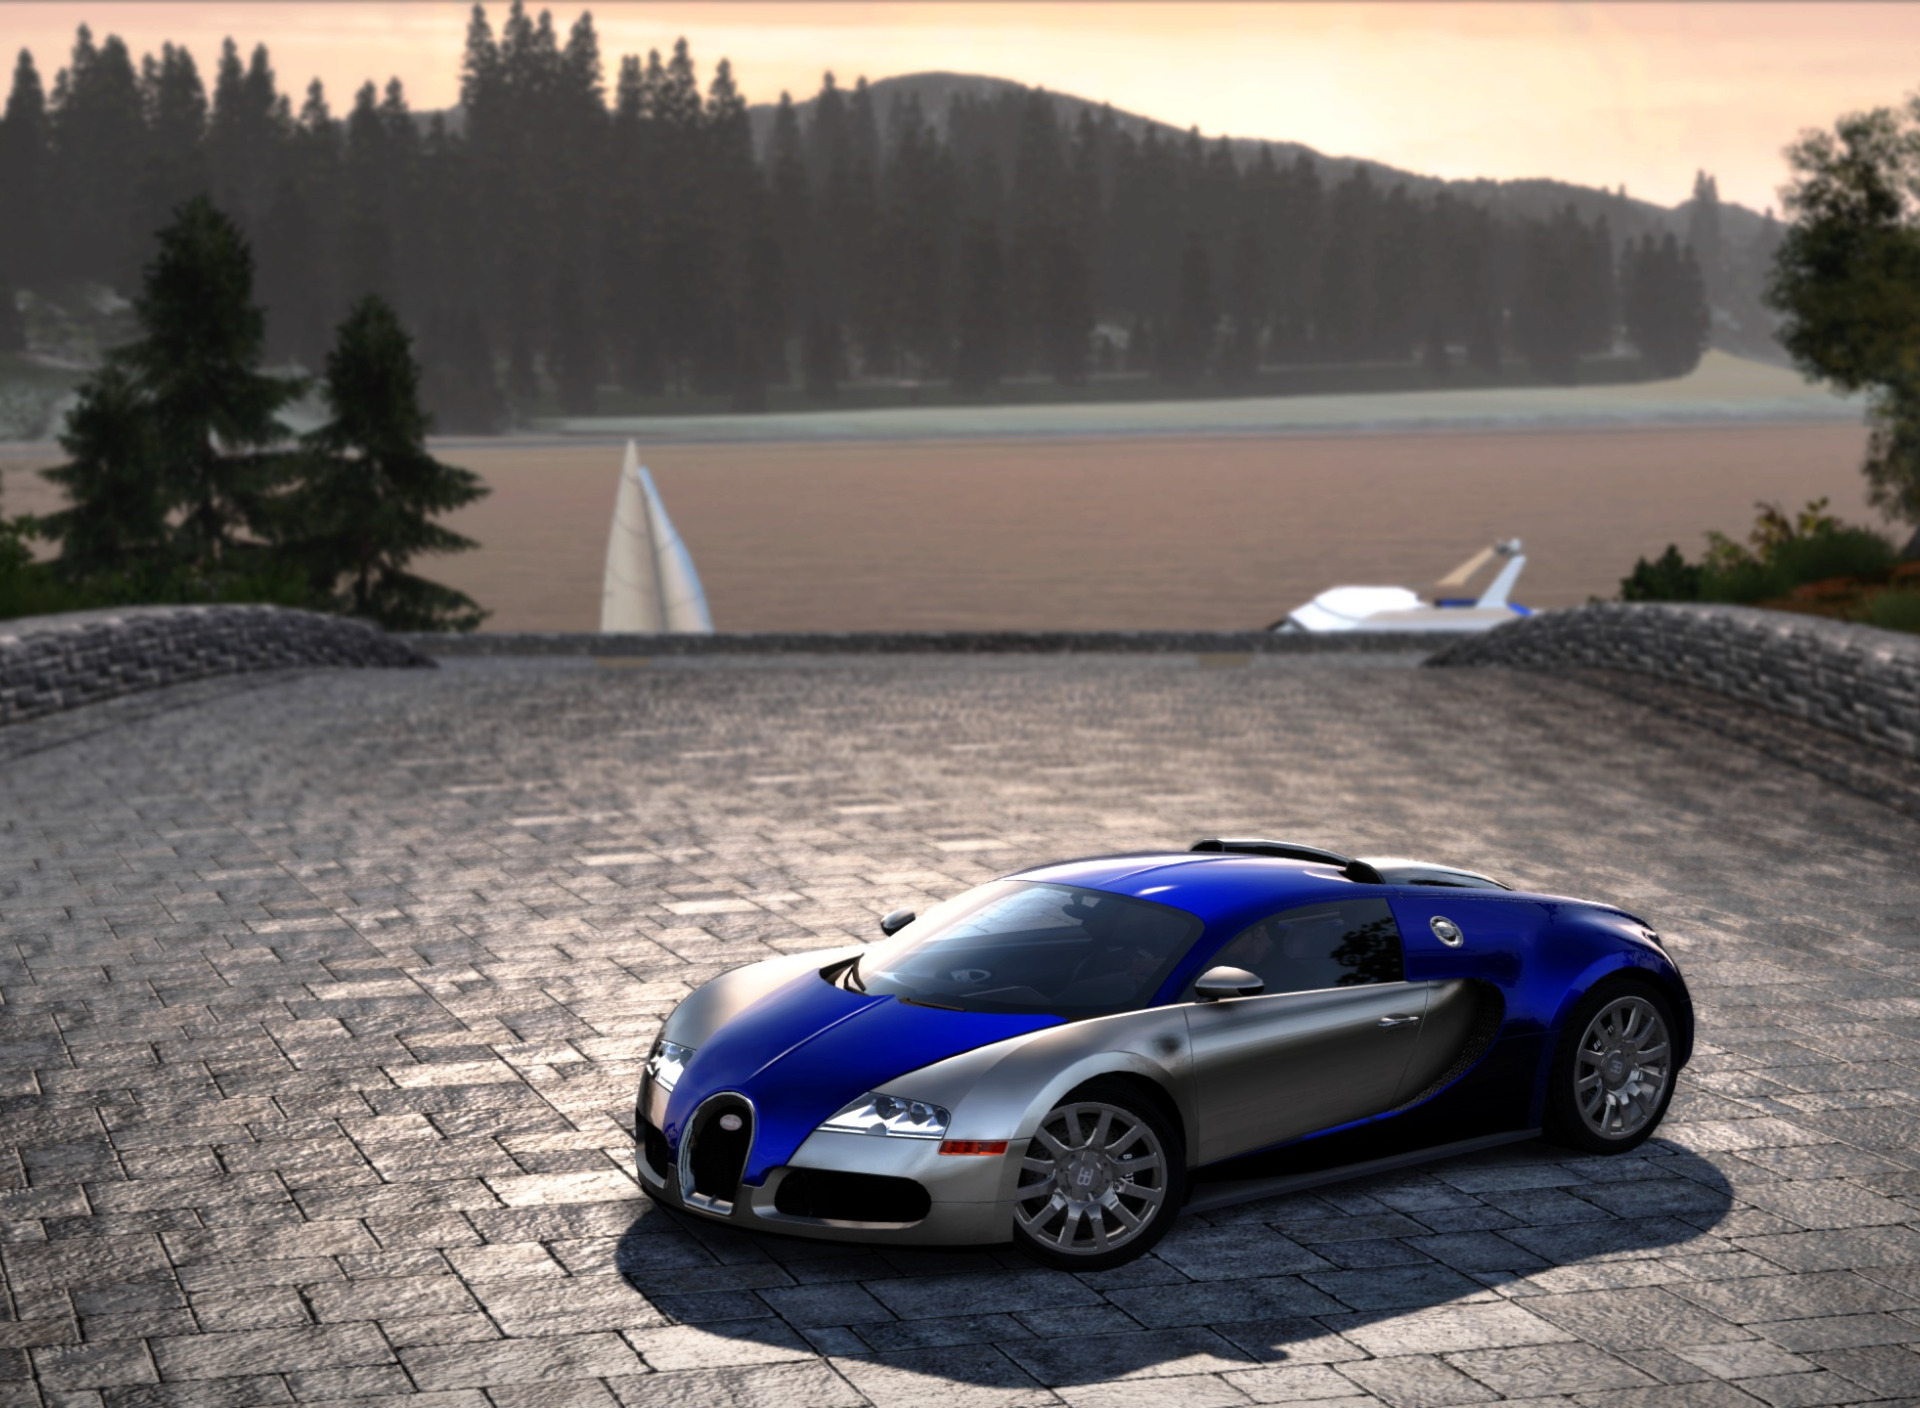 Скачать обои Cars, NFS Hot Pursuit 2010, Сидж, Bugatti Veyron 16.4, раздел ...